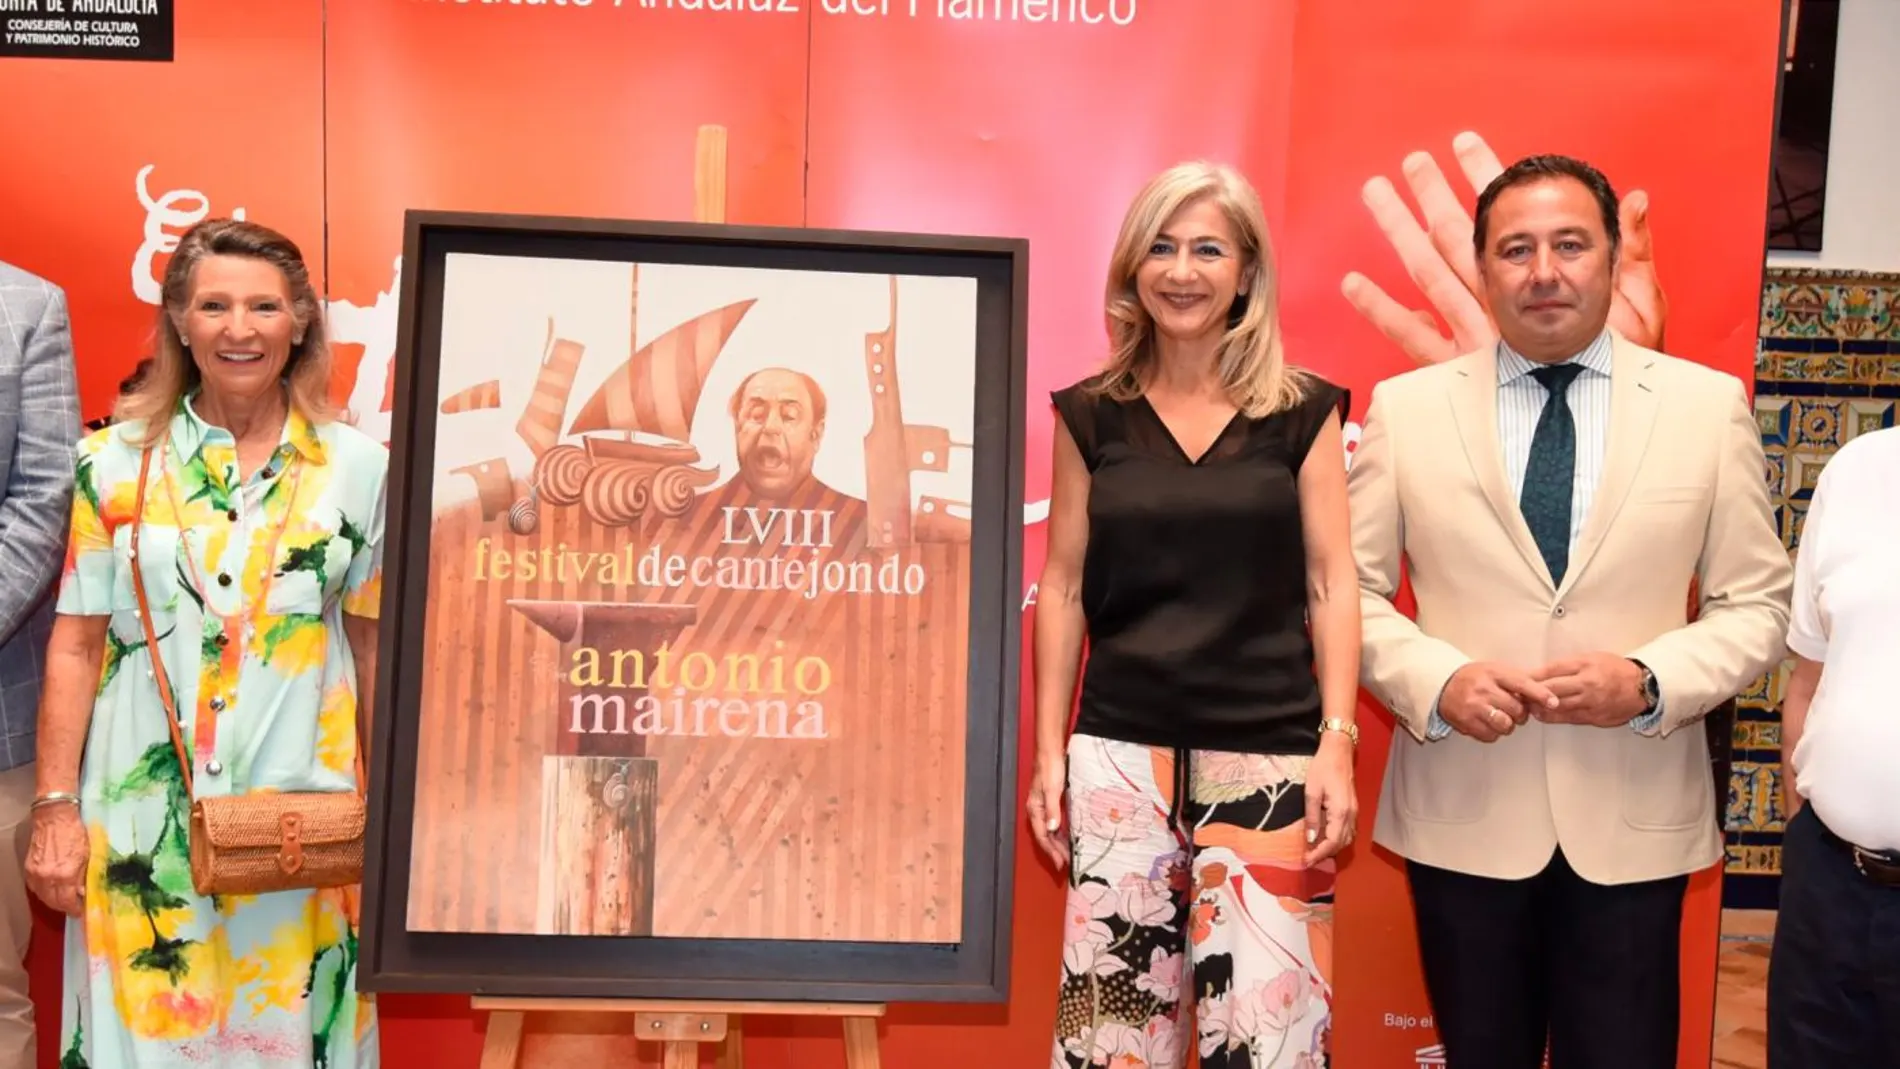 De izquierda a derecha, el alcalde de Mairena, Juan Manuel López; Cristina Heeren; la consejera de Cultura, Patricia del Pozo;el delegado de la Junta en Sevilla, Ricardo Sánchez, y Justo Girón, creador del cartel